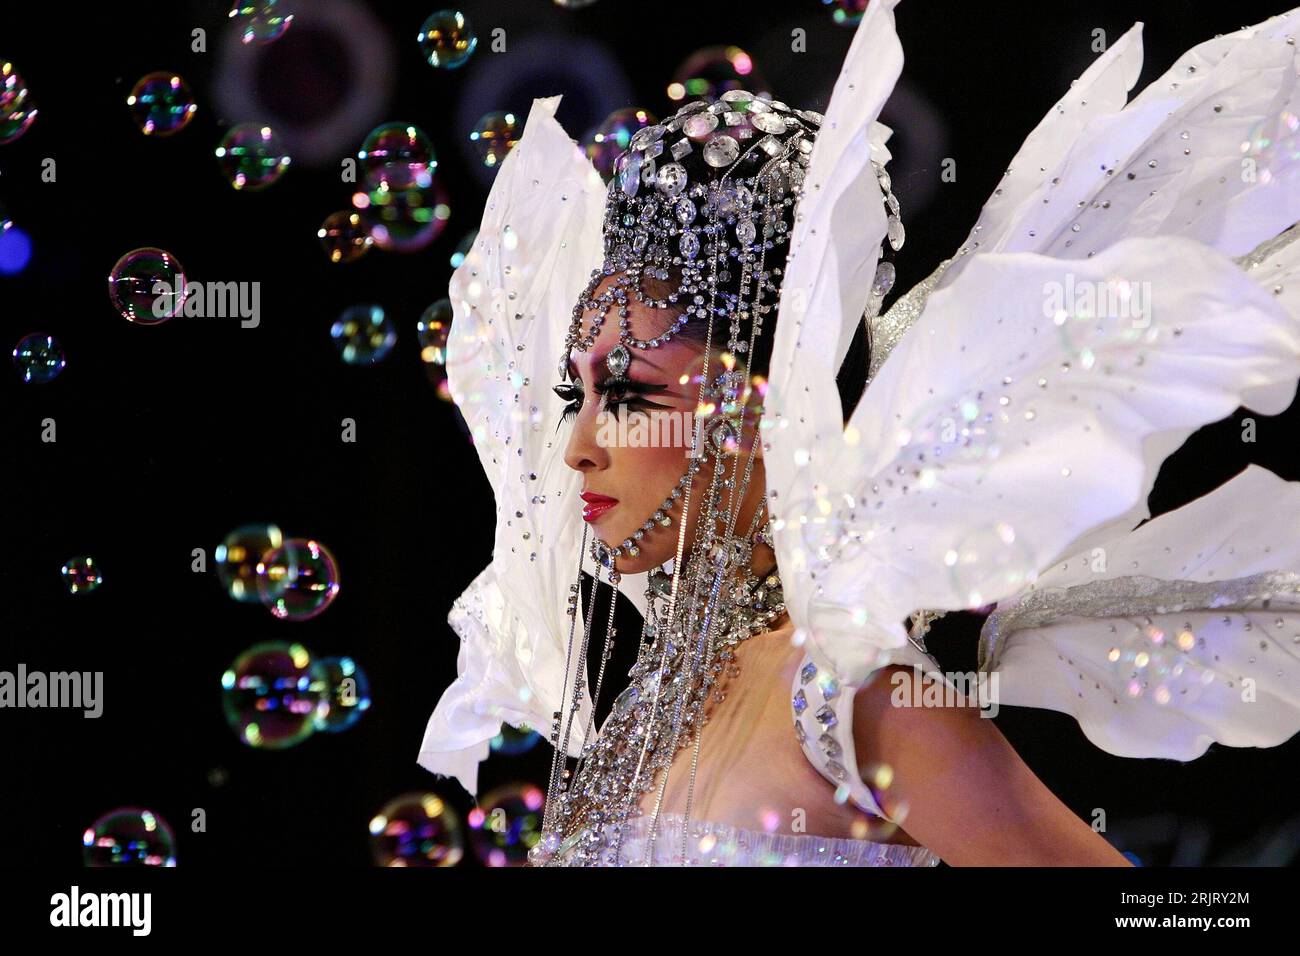 Bildnummer: 50940035 Datum: 06.10.2005 Copyright: imago/Xinhua Asiatisches  Model mit Discokugelhut präsentiert eine ausgefallene Kreation des  chinesischen Make-up-Artists Mao Geping anlässlich einer Präsentation der  neuen Herbst-Winter-Make-up-Trends